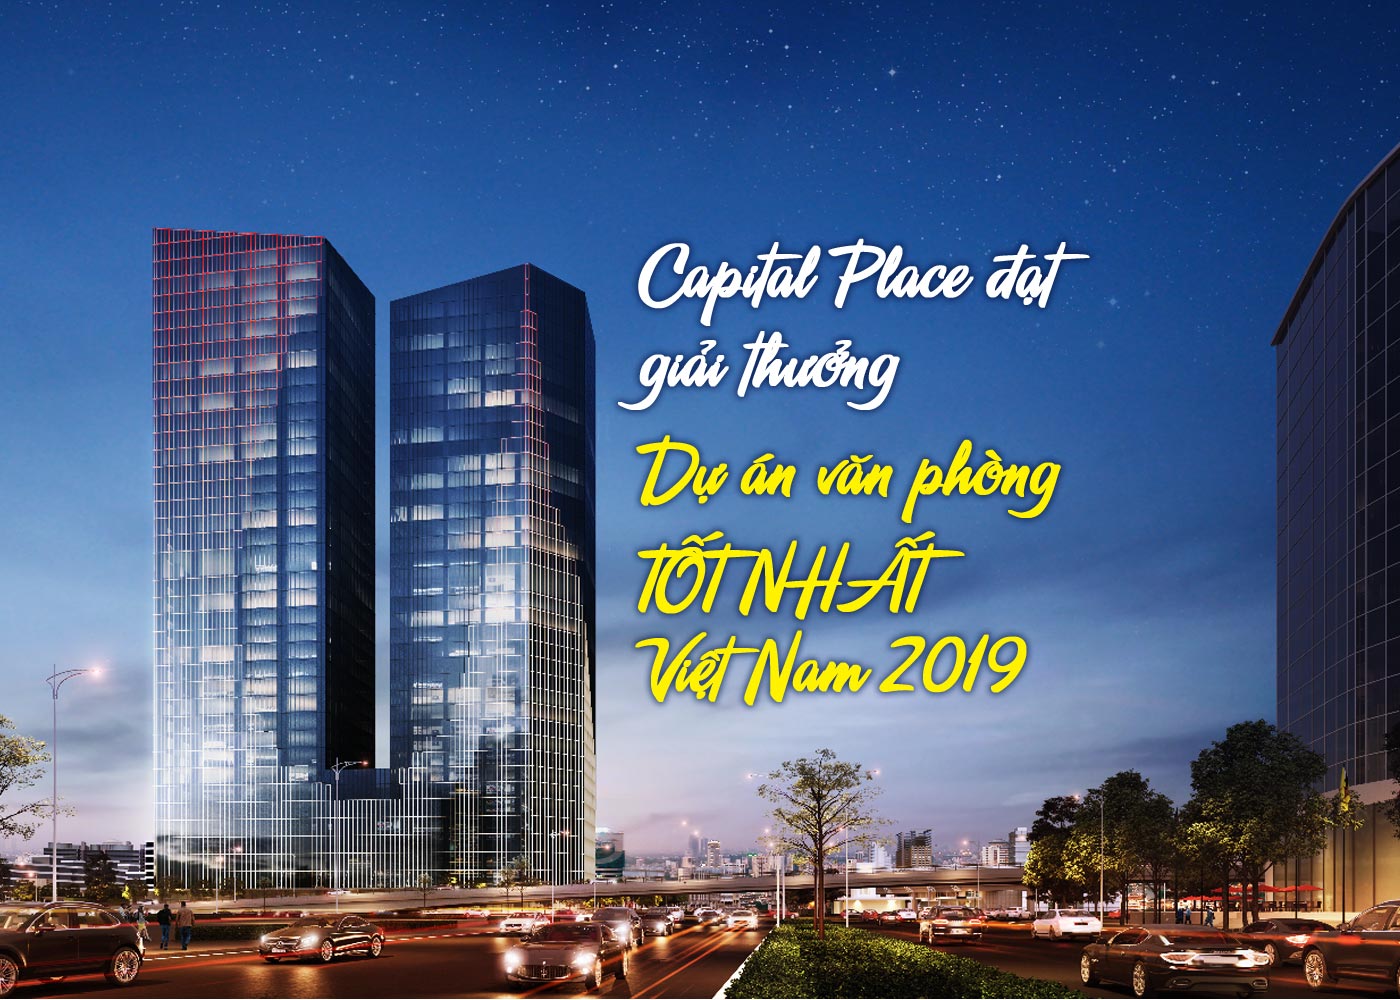 Capital Place đạt giải thưởng dự án văn phòng tốt nhất Việt Nam 2019 - Ảnh 1